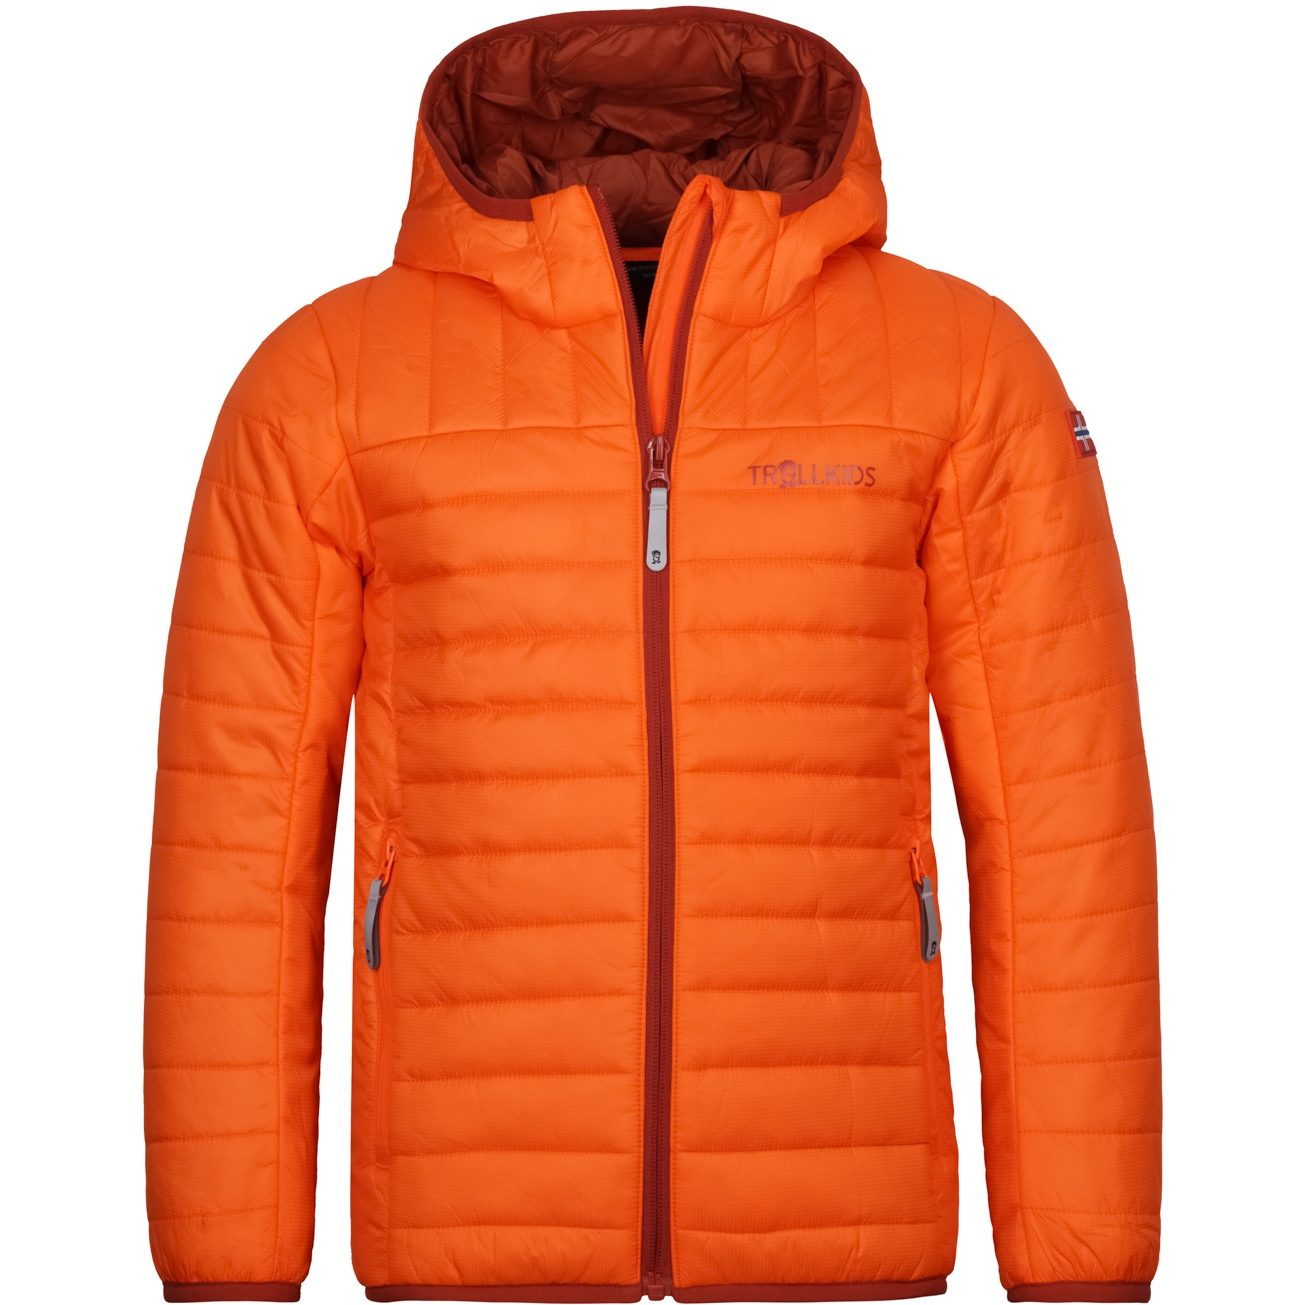 Productfoto van Trollkids Eikefjord Kinderjas - Bright Orange/Red Brown